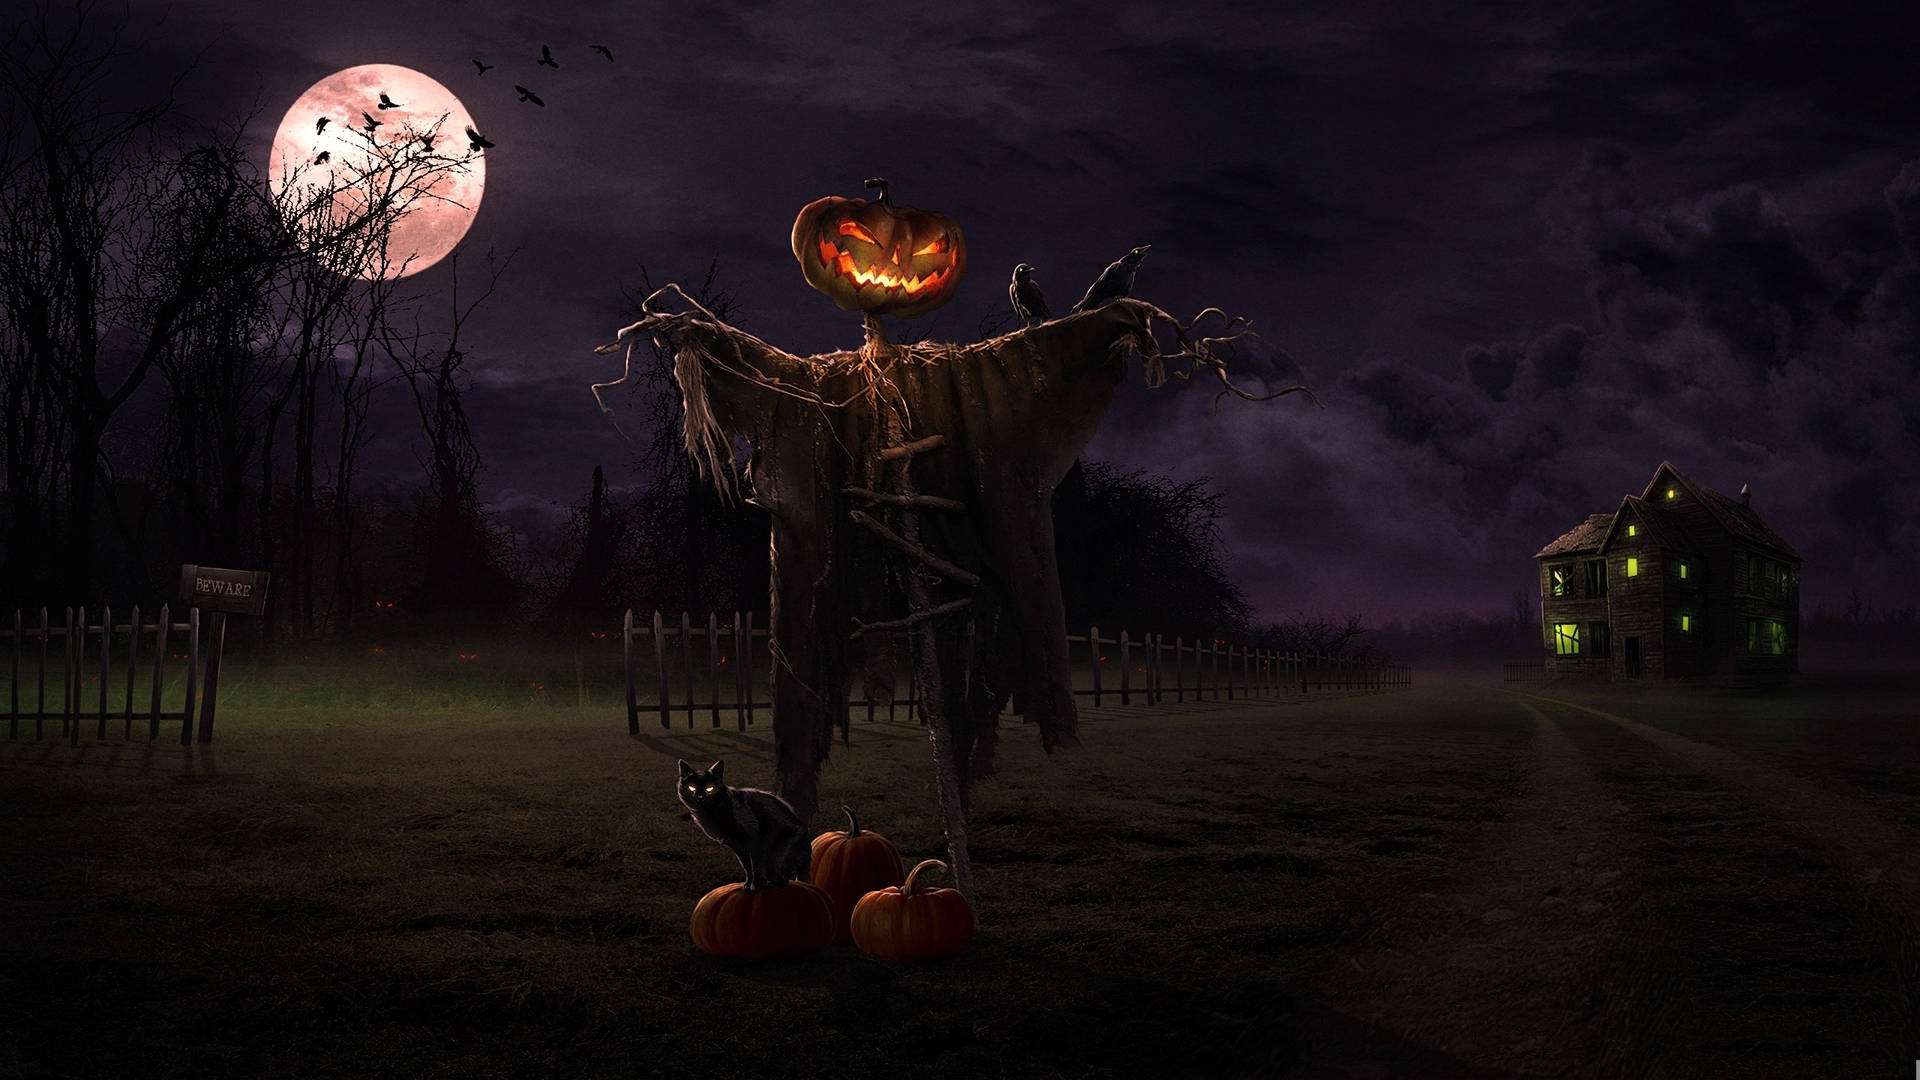 Halloweenhintergrundbilder In Hd - Hd Hintergrundbilder Wallpaper